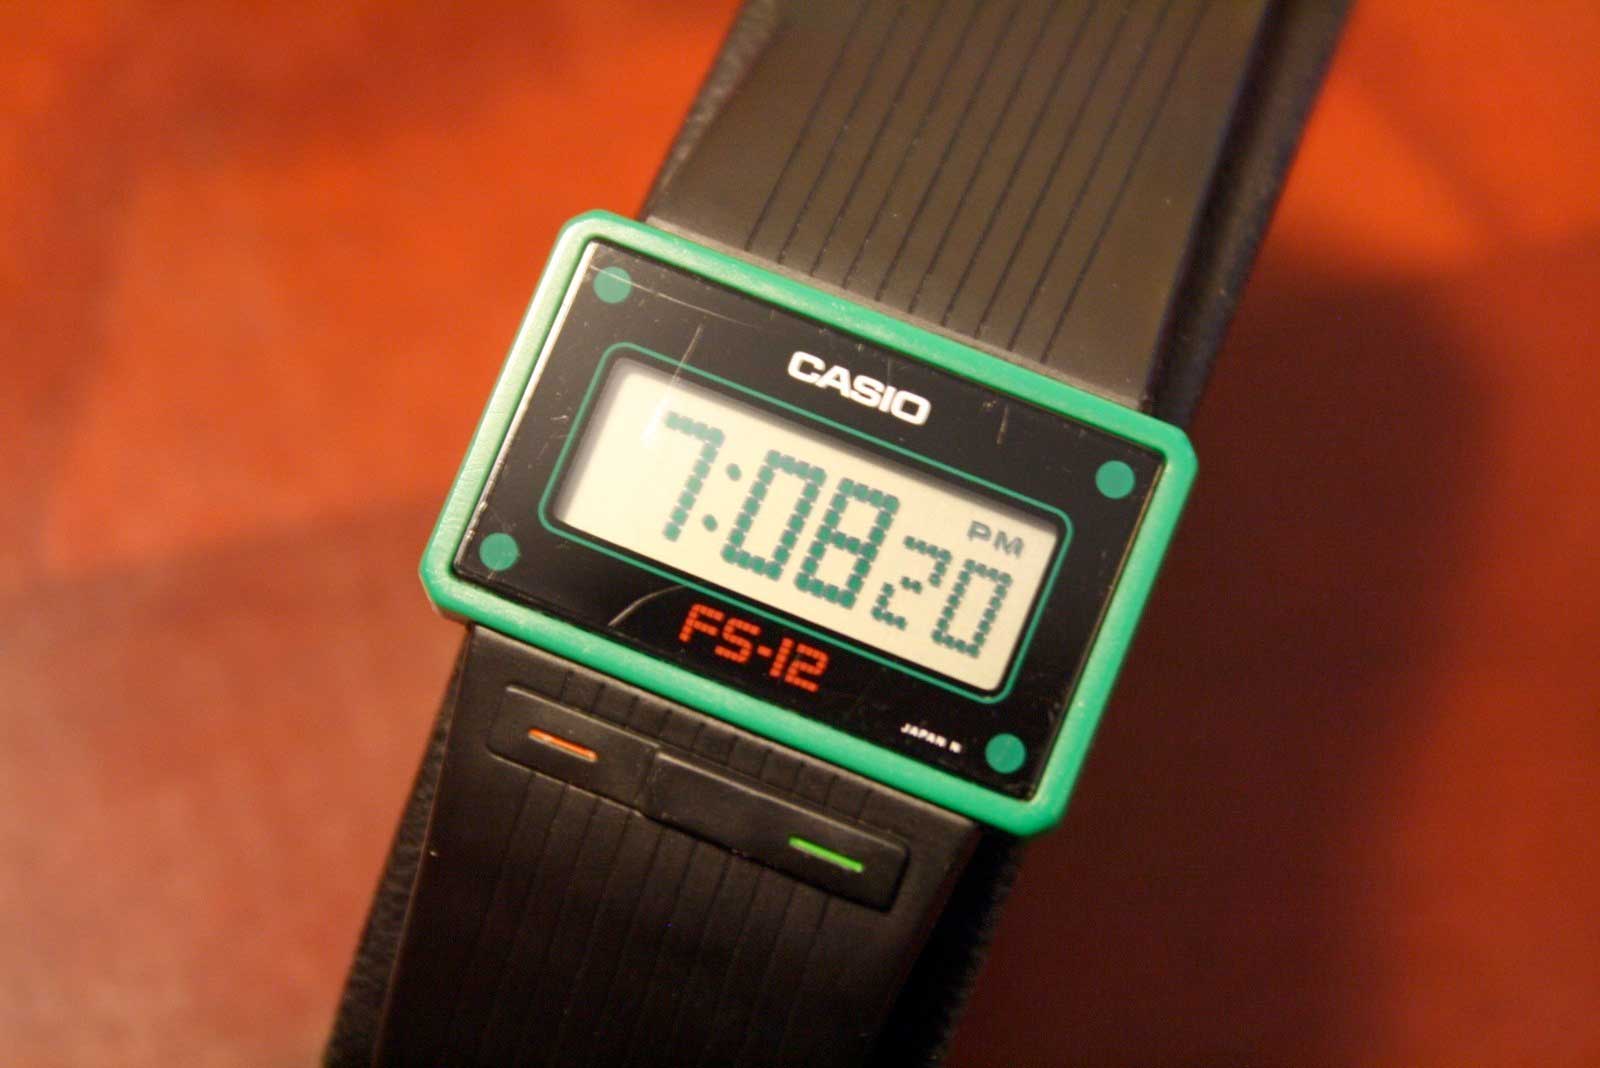 CASIO - FS-12 - f-series - Vintage Digital Watch - Digital-Watch.com